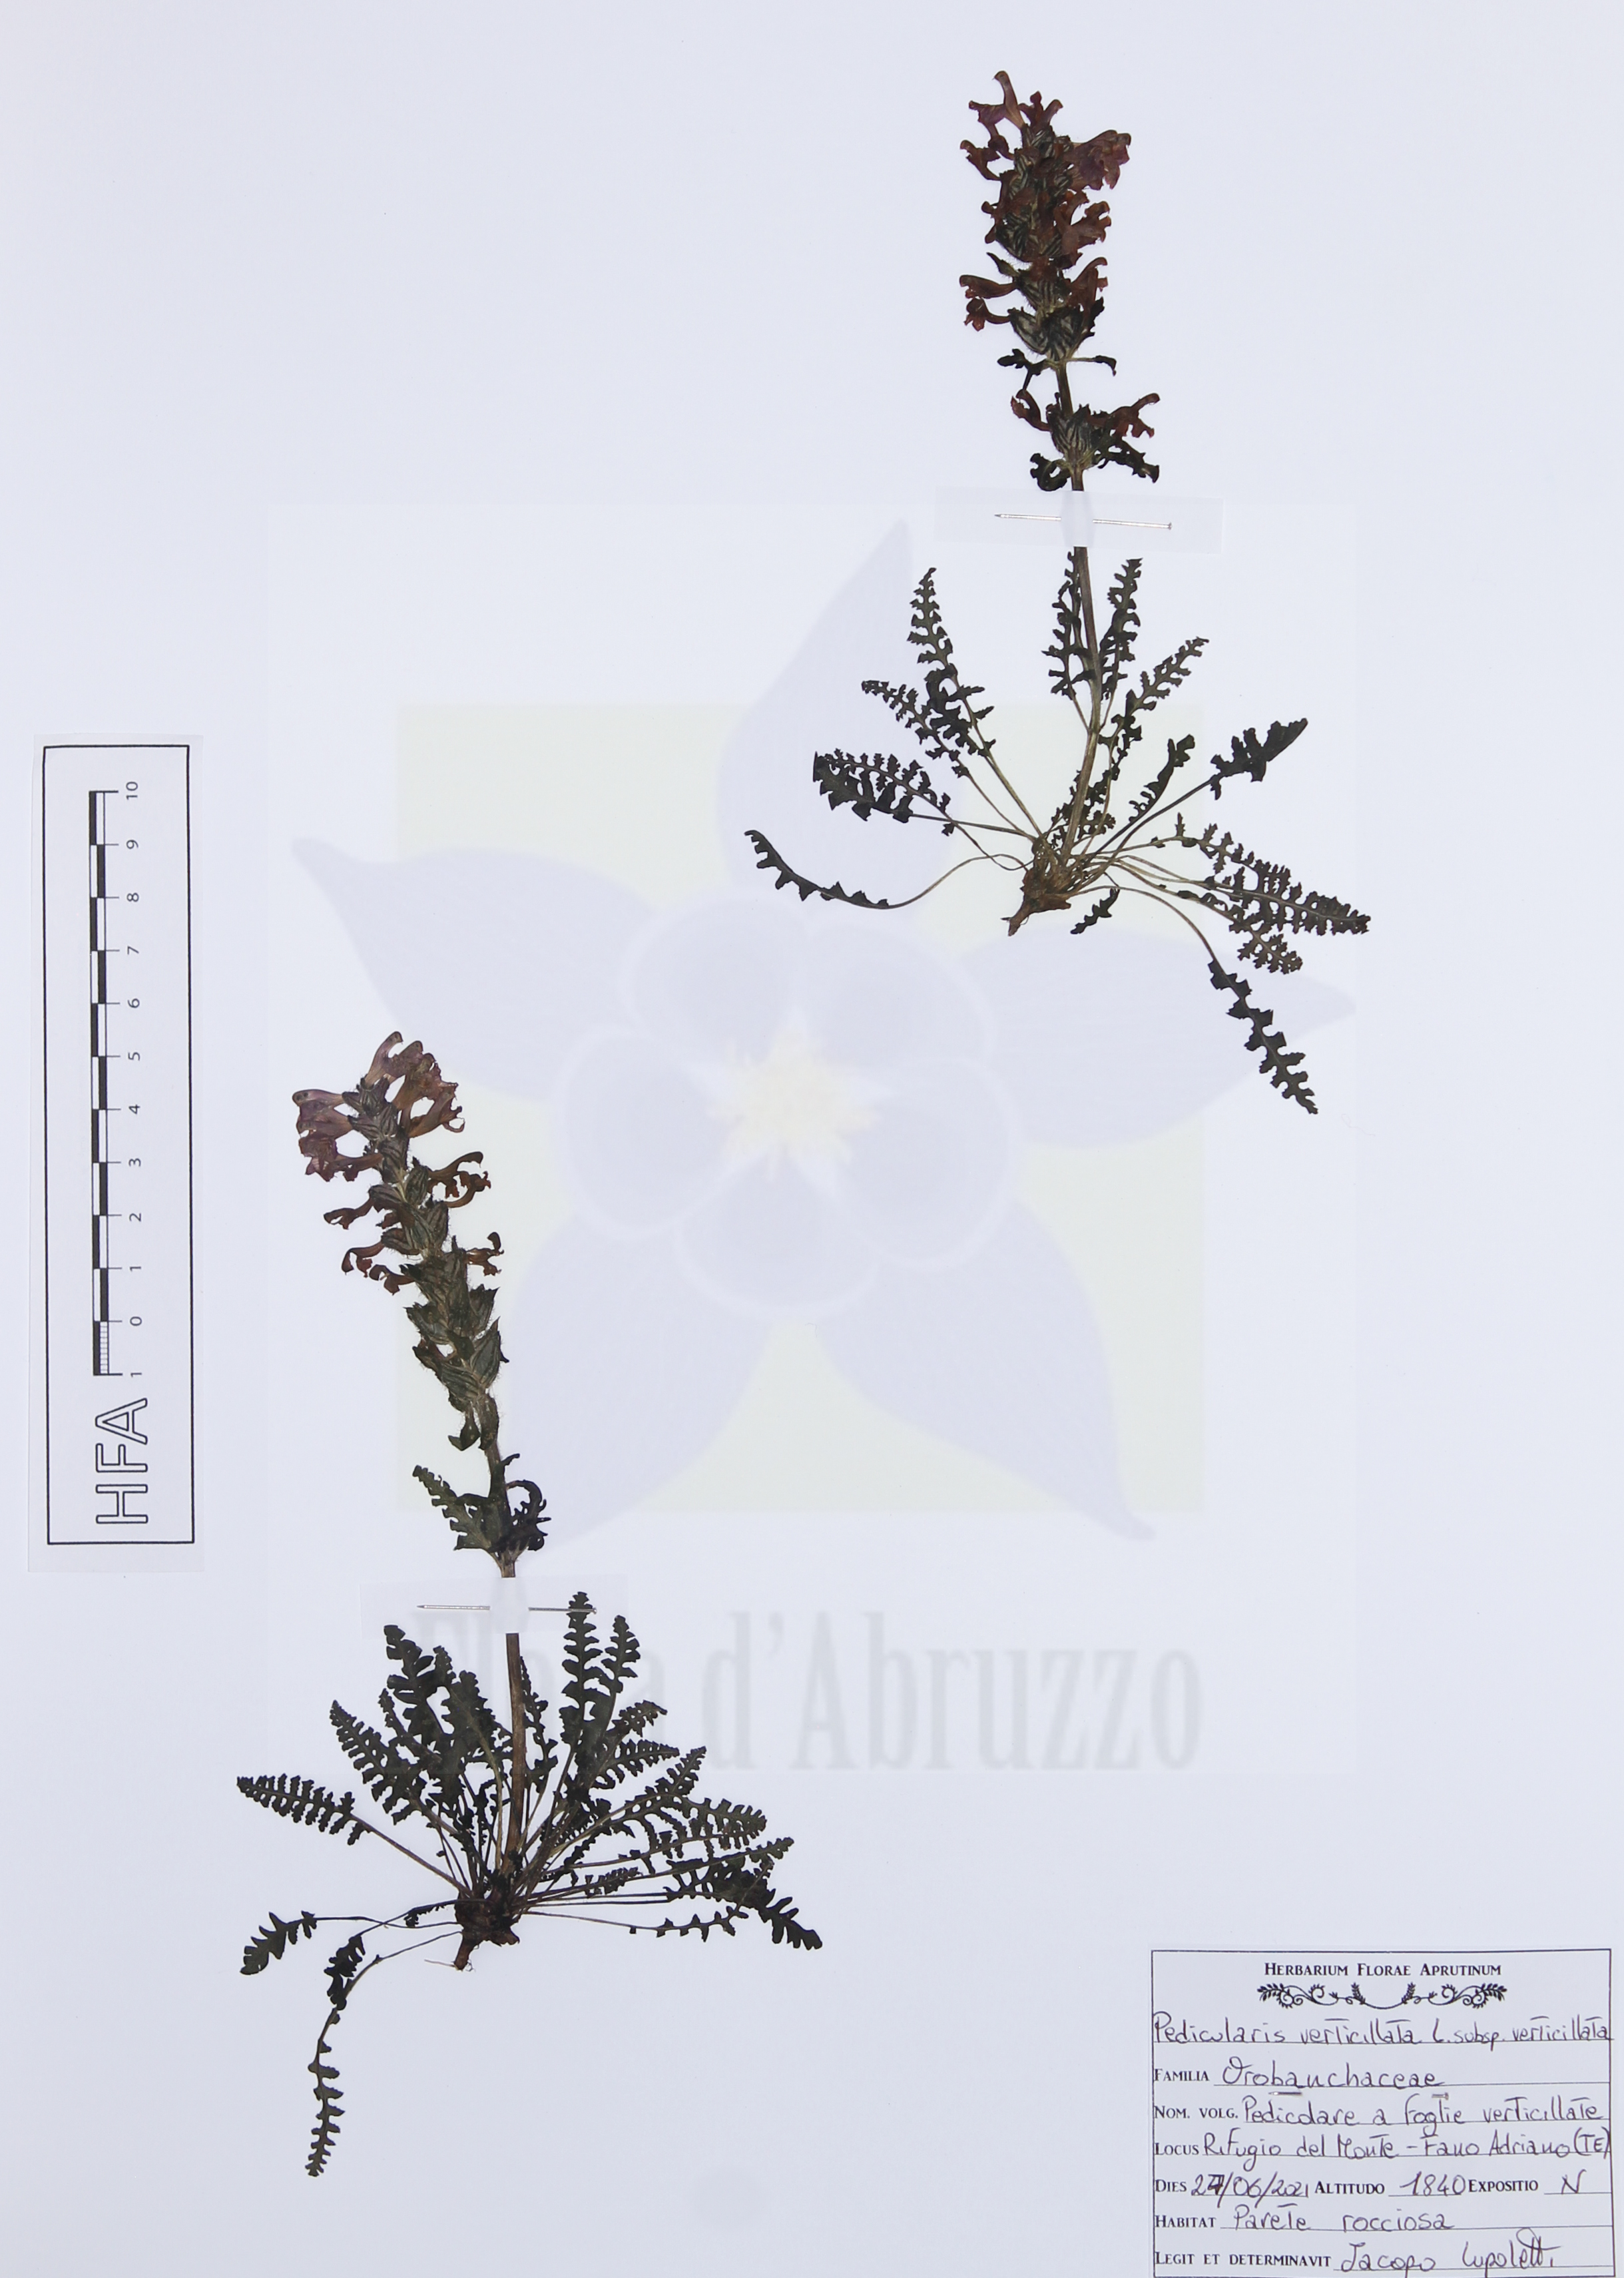 Pedicularis verticillata L. subsp. verticillata